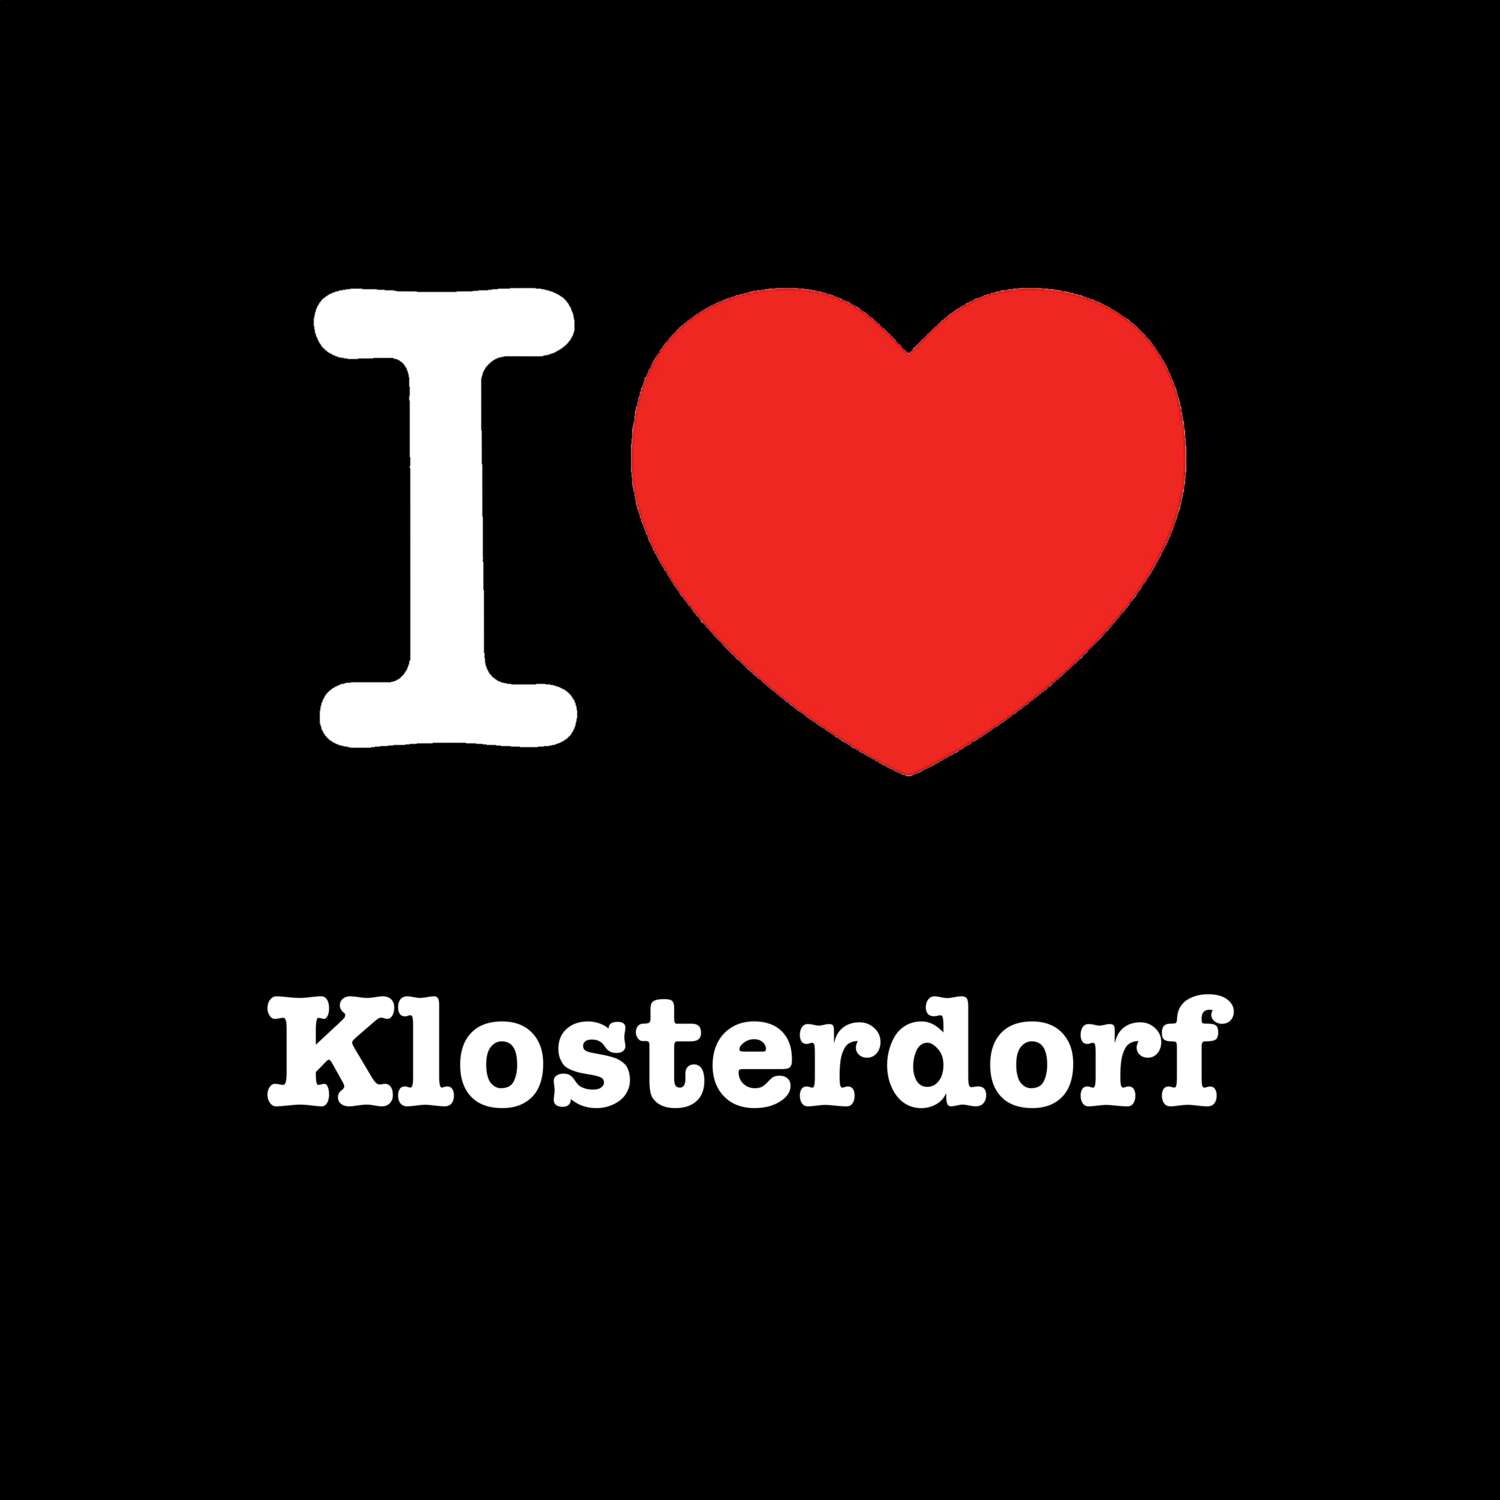 Klosterdorf T-Shirt »I love«